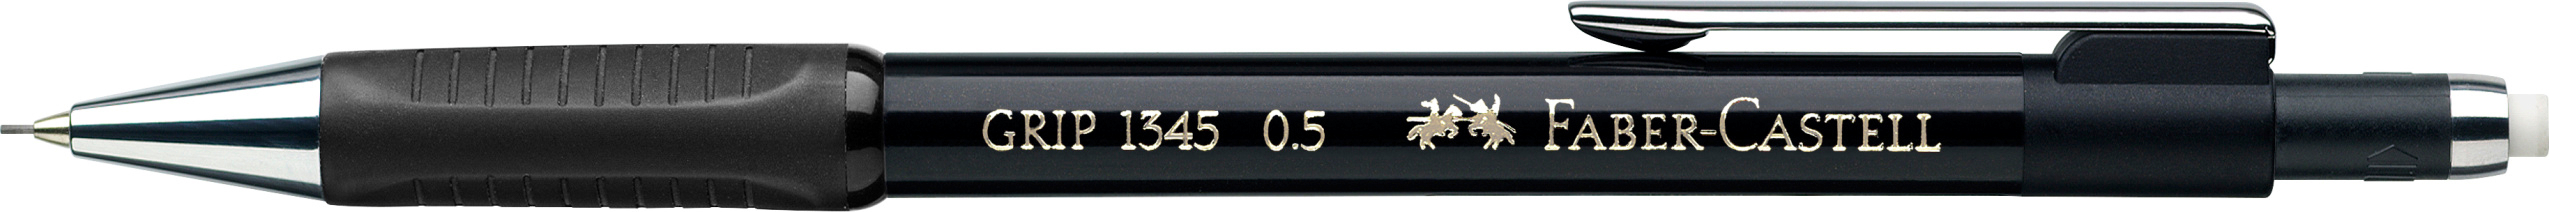 FABER-CASTELL Porte-mine GRIP 1345 134599 noir, avec gomme 0.5mm